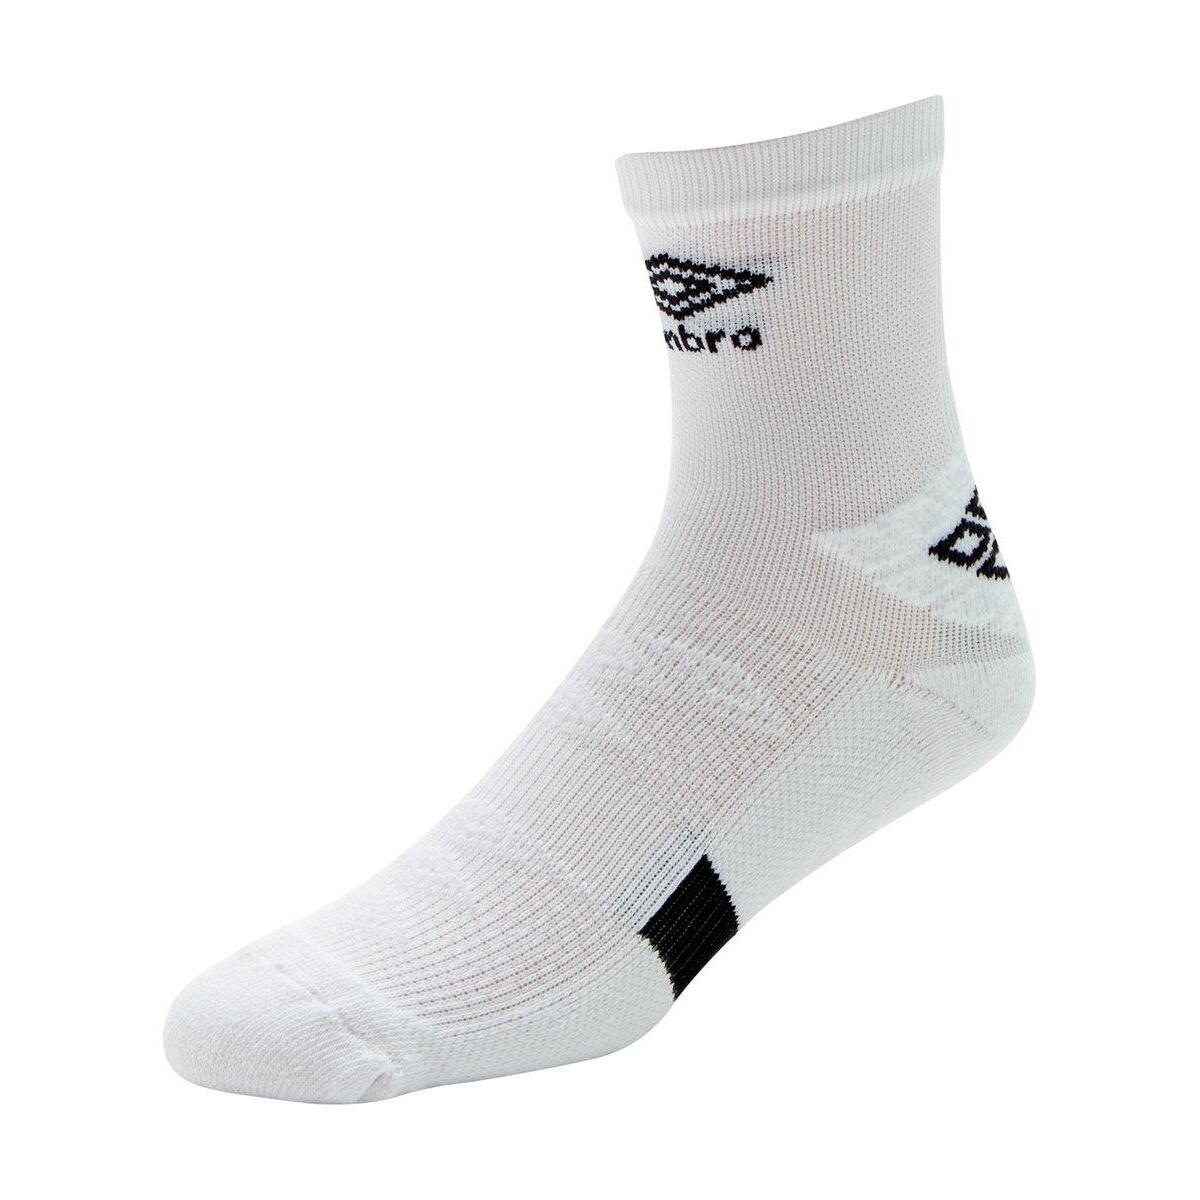 UMBRO Mens Pro Protex Gripped Socks (White/Black)